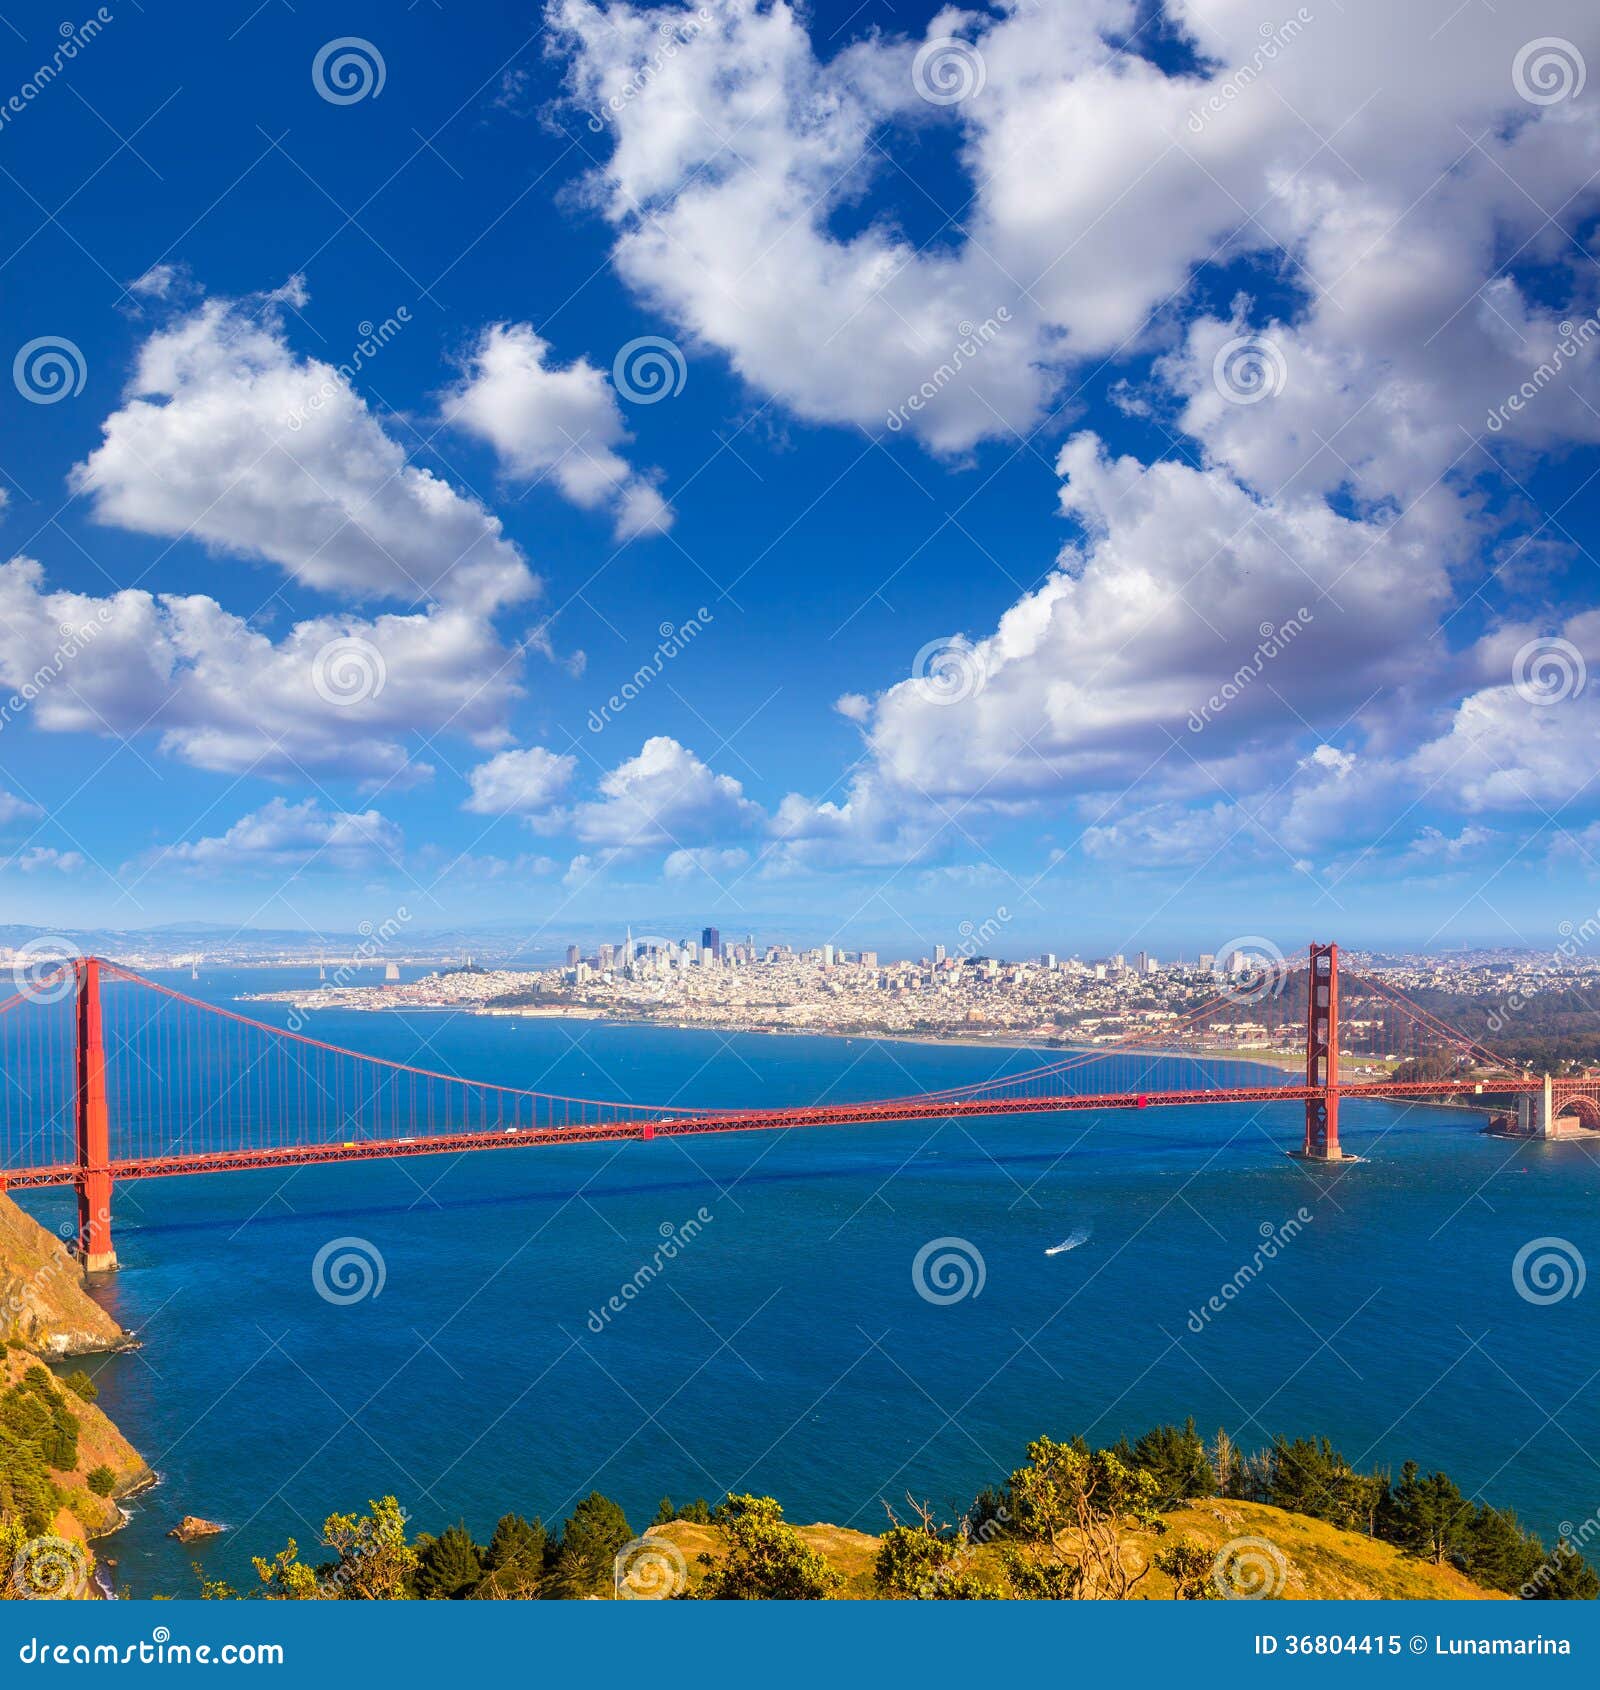 san francisco golden gate bridge marin headlands california